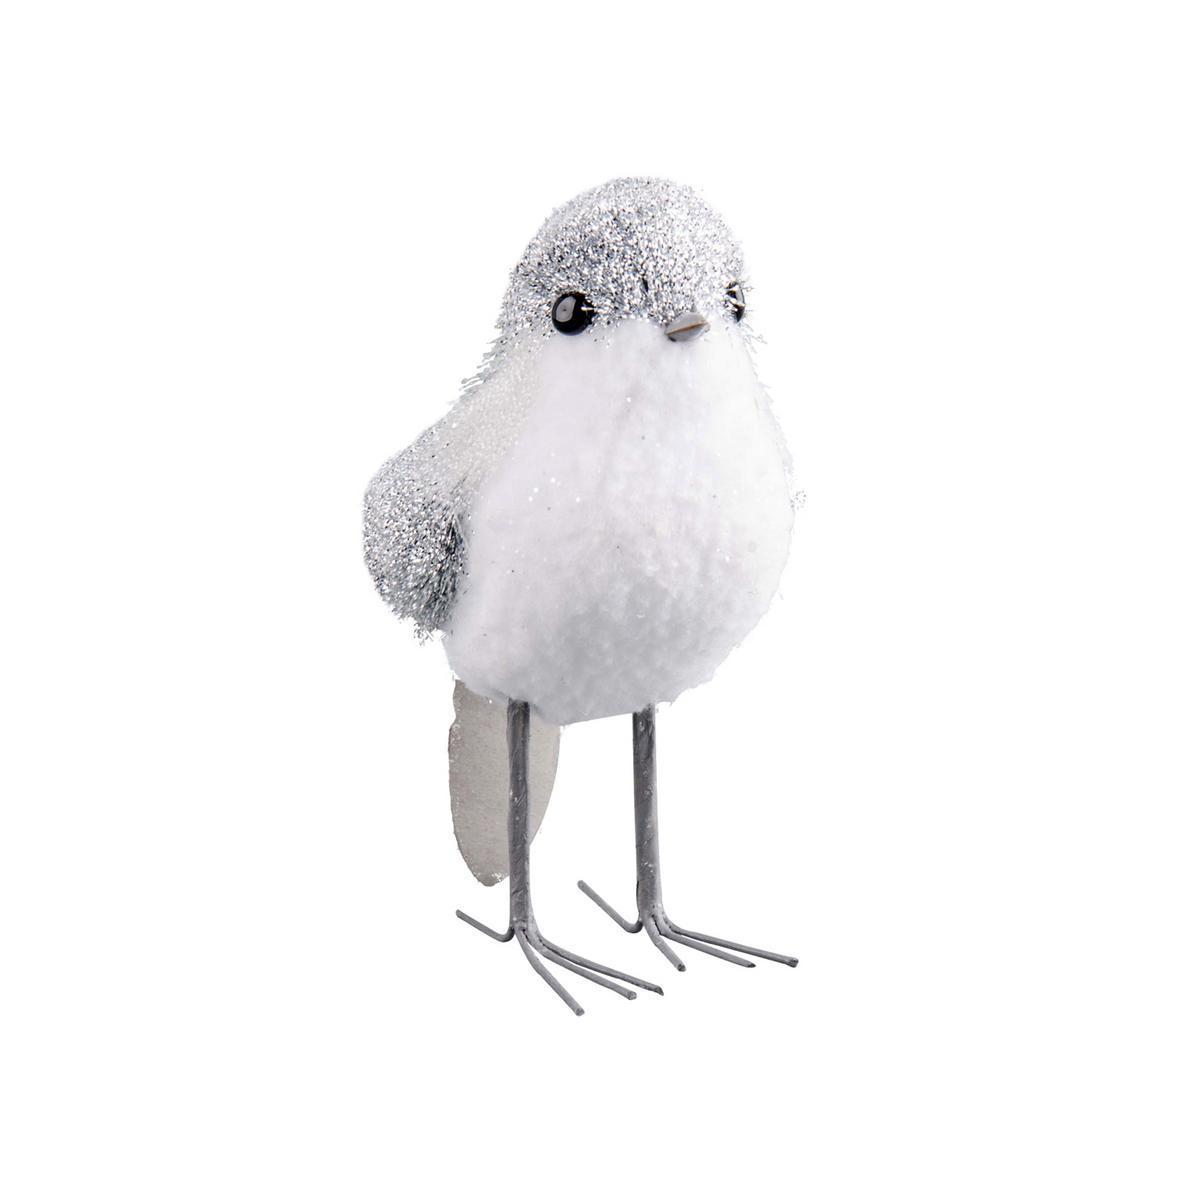 Oiseau debout - Polystyrène et plastique - Différentes tailles - Blanc et gris